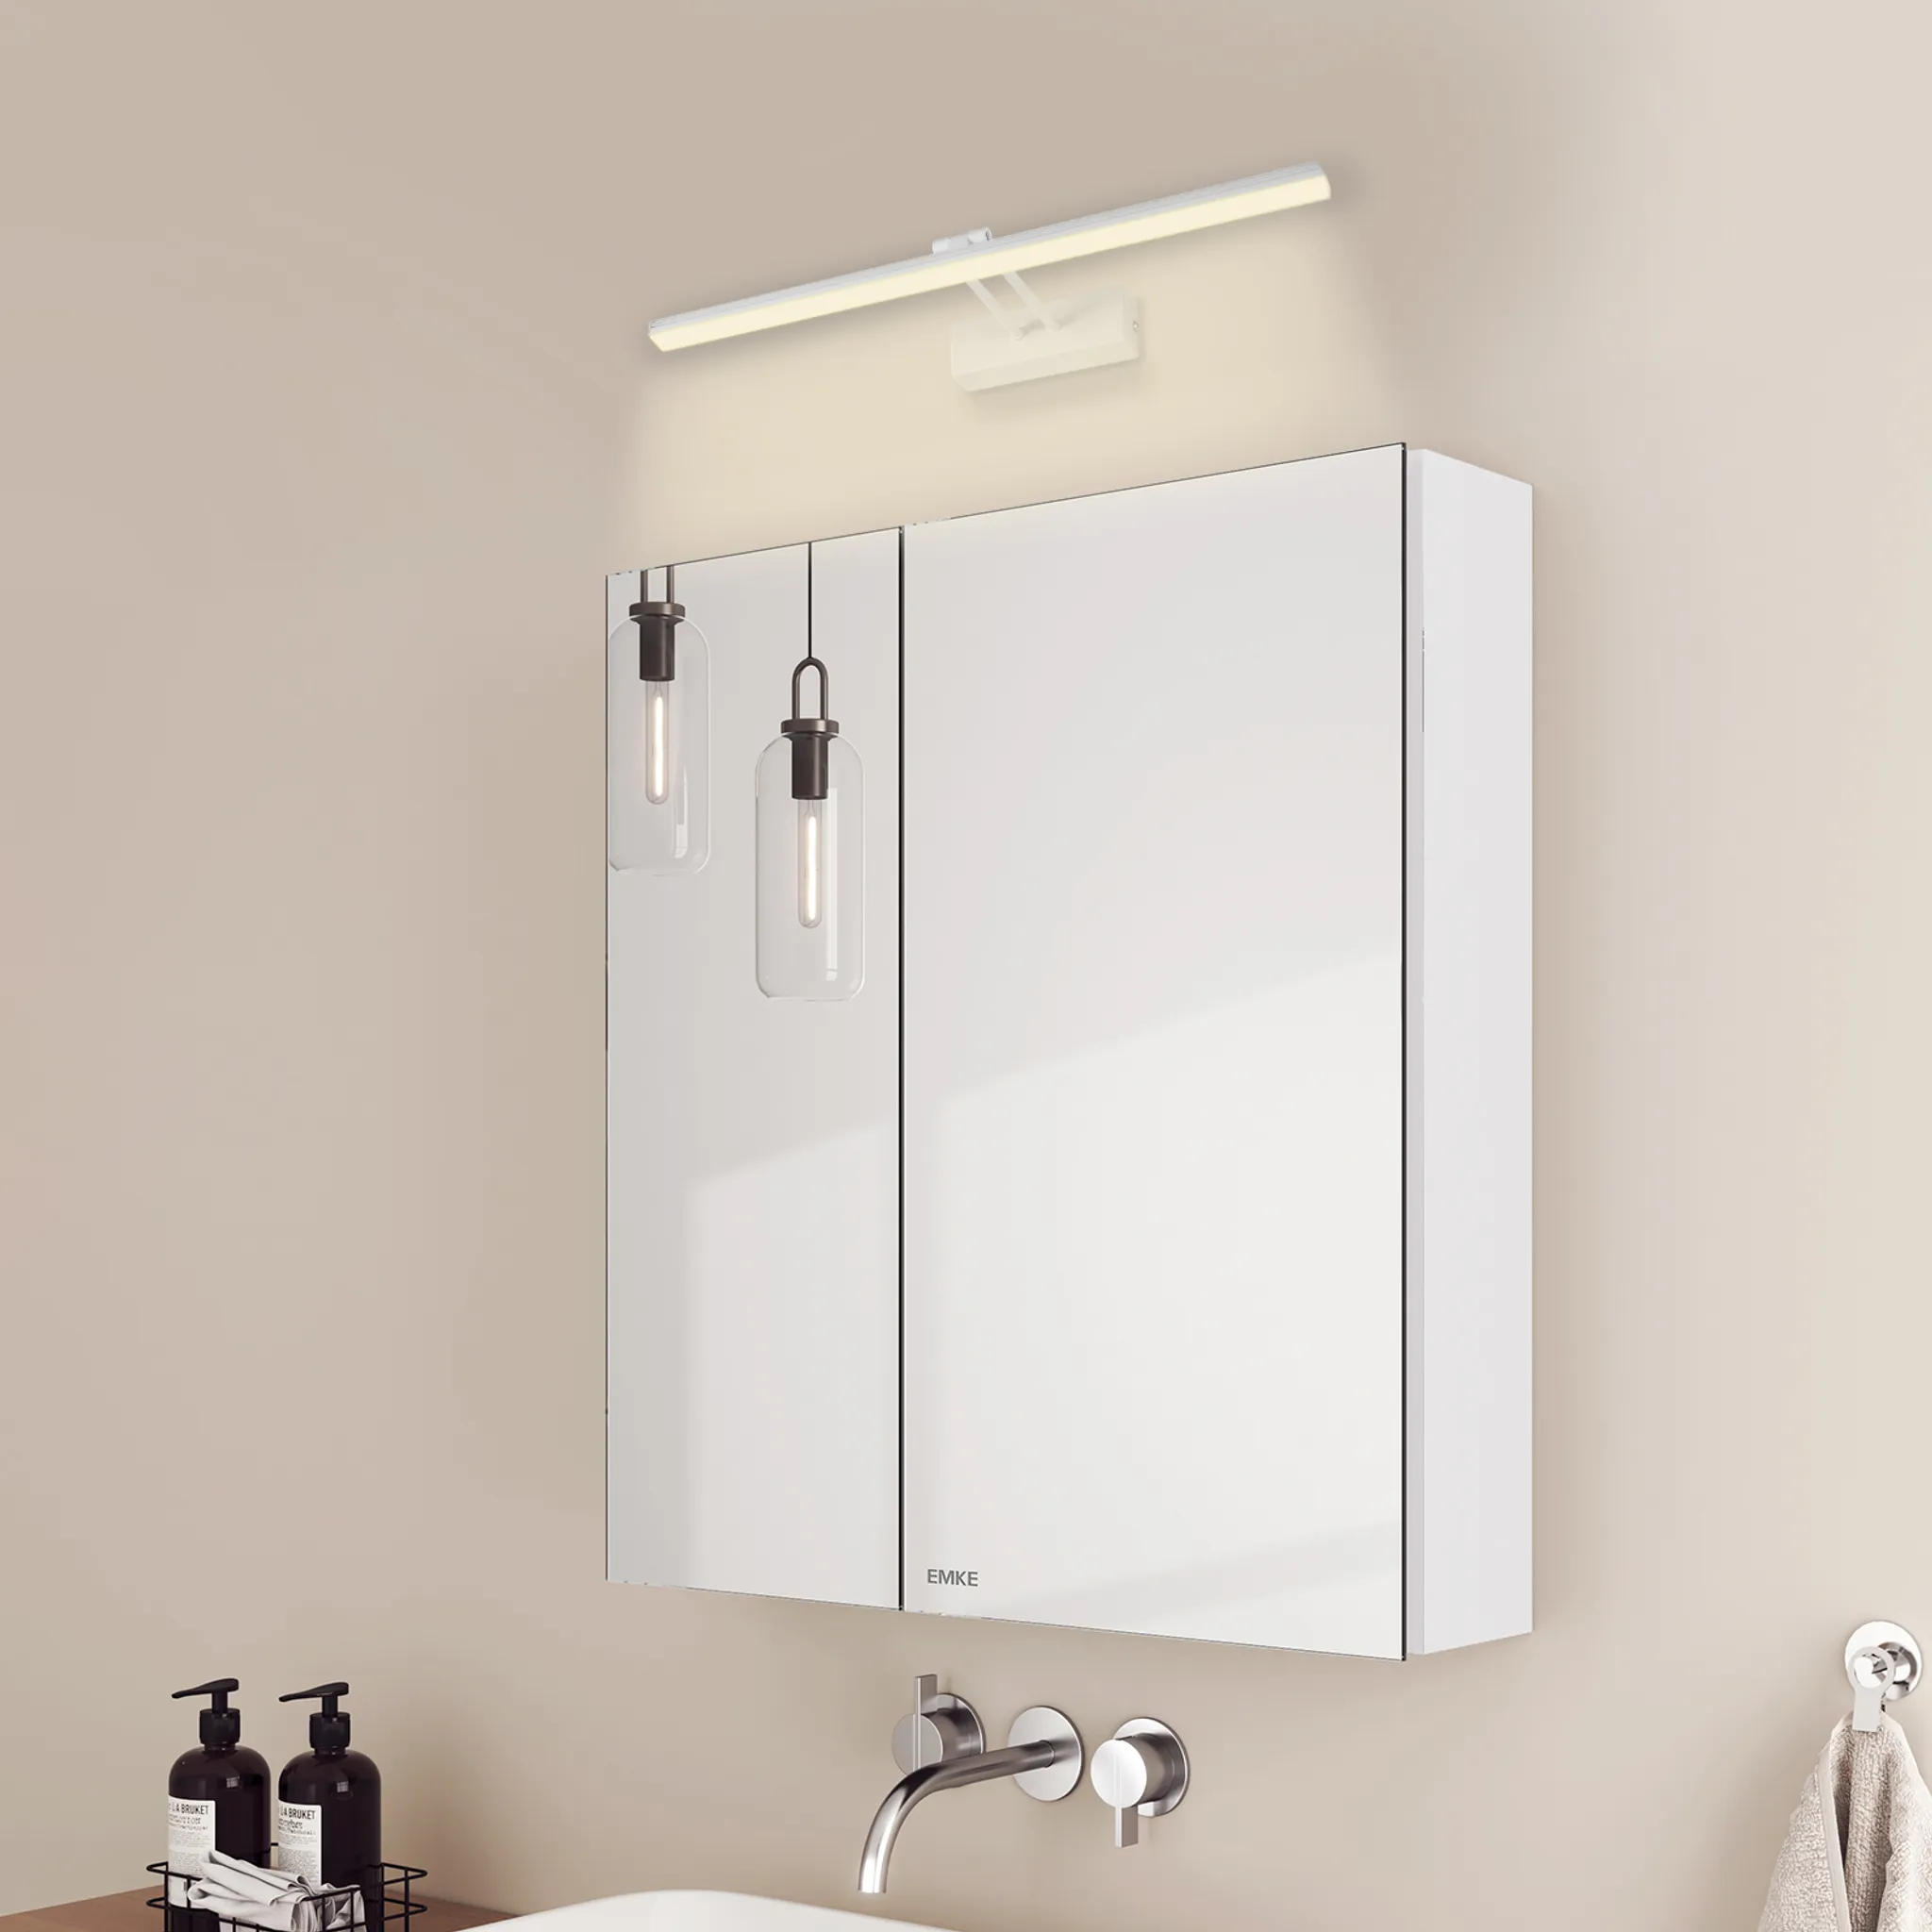 4200k Spiegelschrank und EMKE Wandleuchten Licht 2 Glasböden Neutral und Weiß Badspiegelschrank Spiegellampen,60x65x14.5cm Weiß